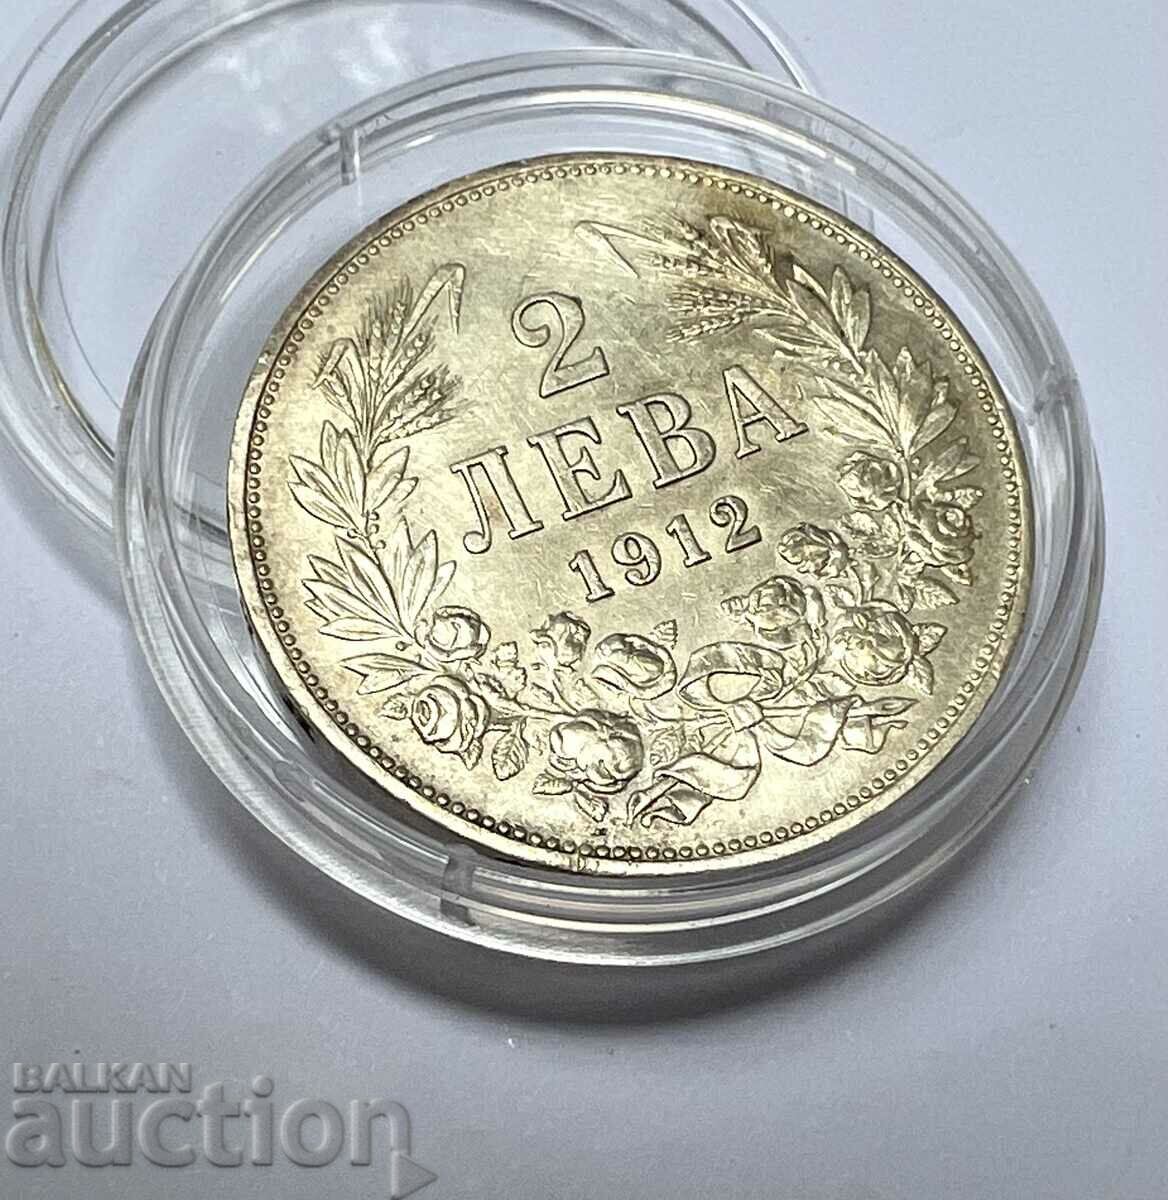 ΚΟΡΥΦΑΙΑ ΒΑΘΜΟΣ - ασημένιο νόμισμα 2 BGN 1912 Ferdinand I